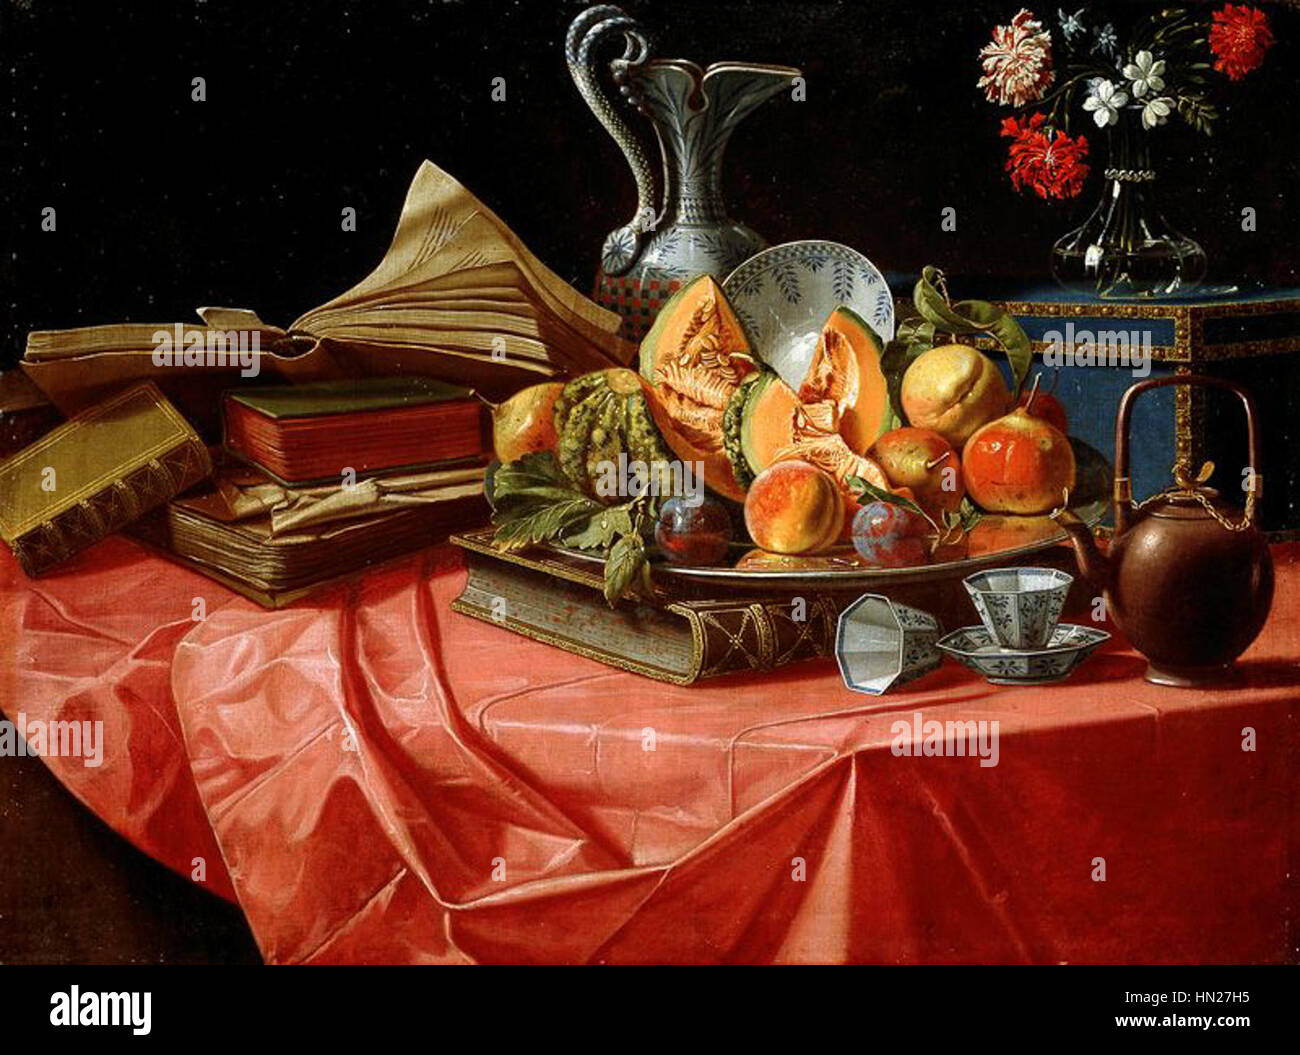 Munari, Cristoforo - Libri, porcellane cinesi, vassoio di frutta, bauletto, vasetto di fiori e teiera su tavolo coperto da tovaglia rossa Stock Photo